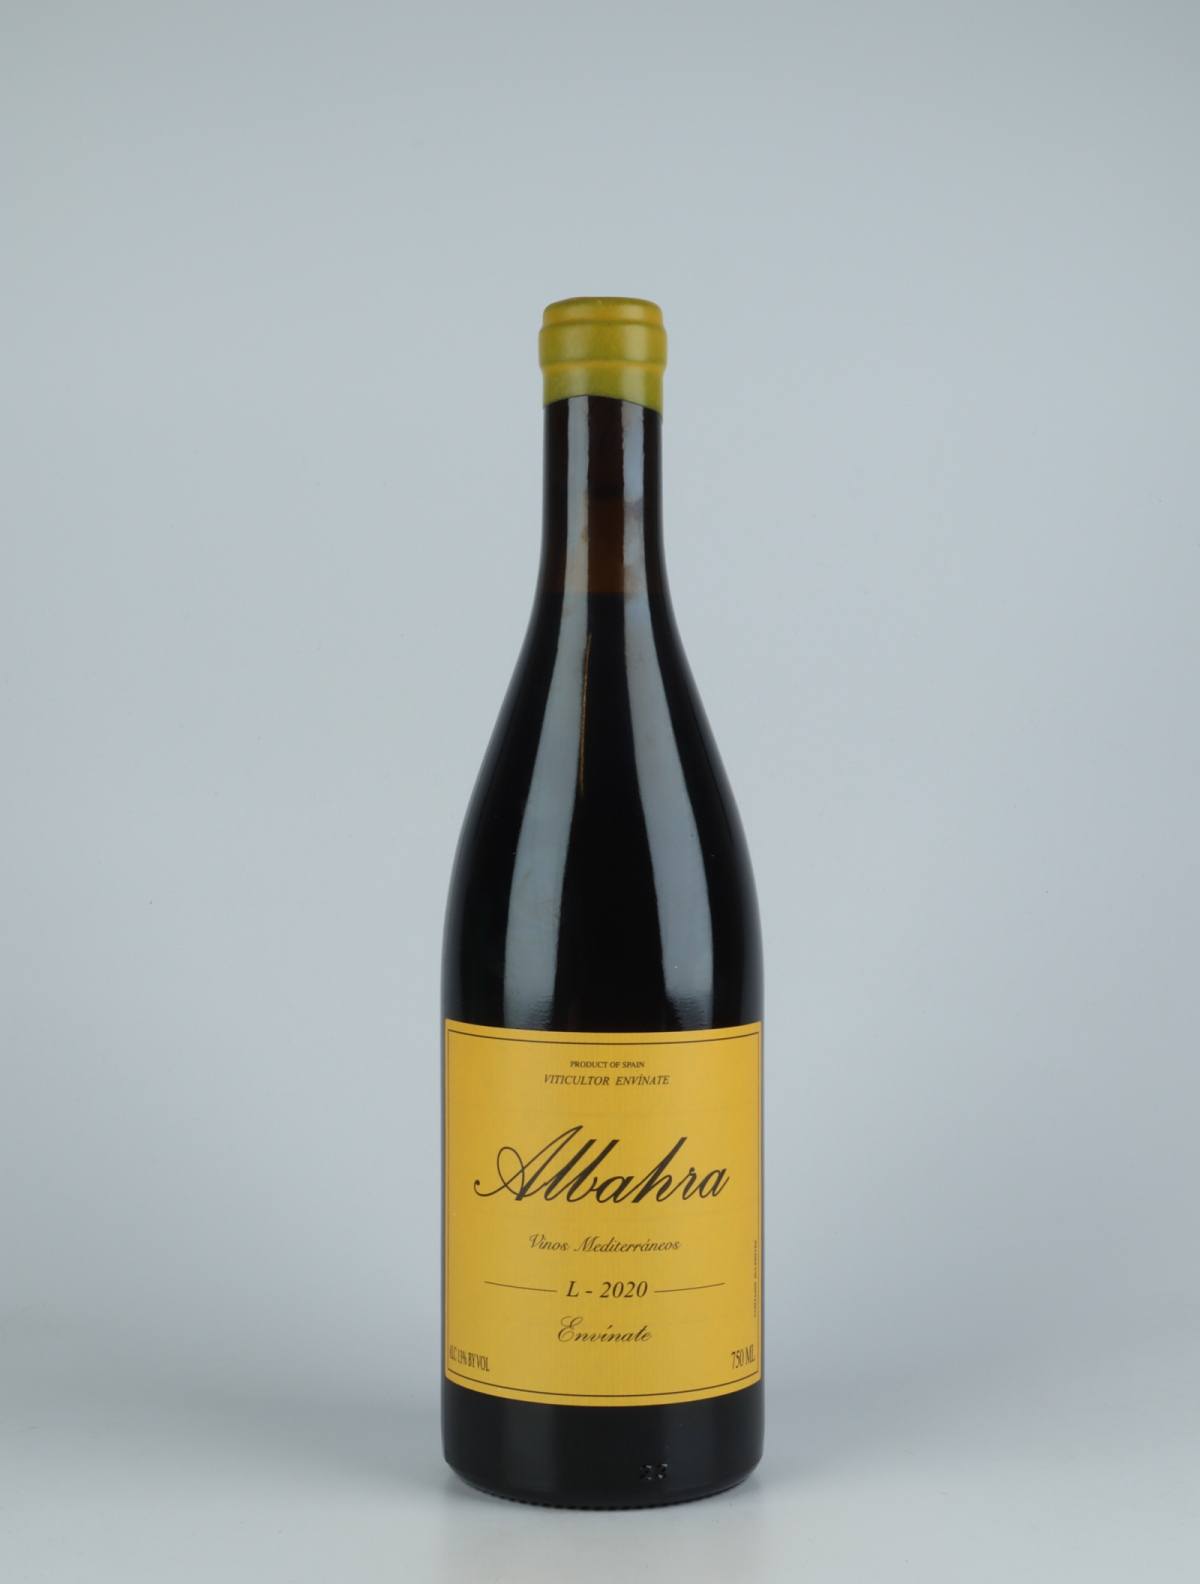 A bottle 2020 Albahra - Almansa Red wine from Envínate, Almansa in Spain